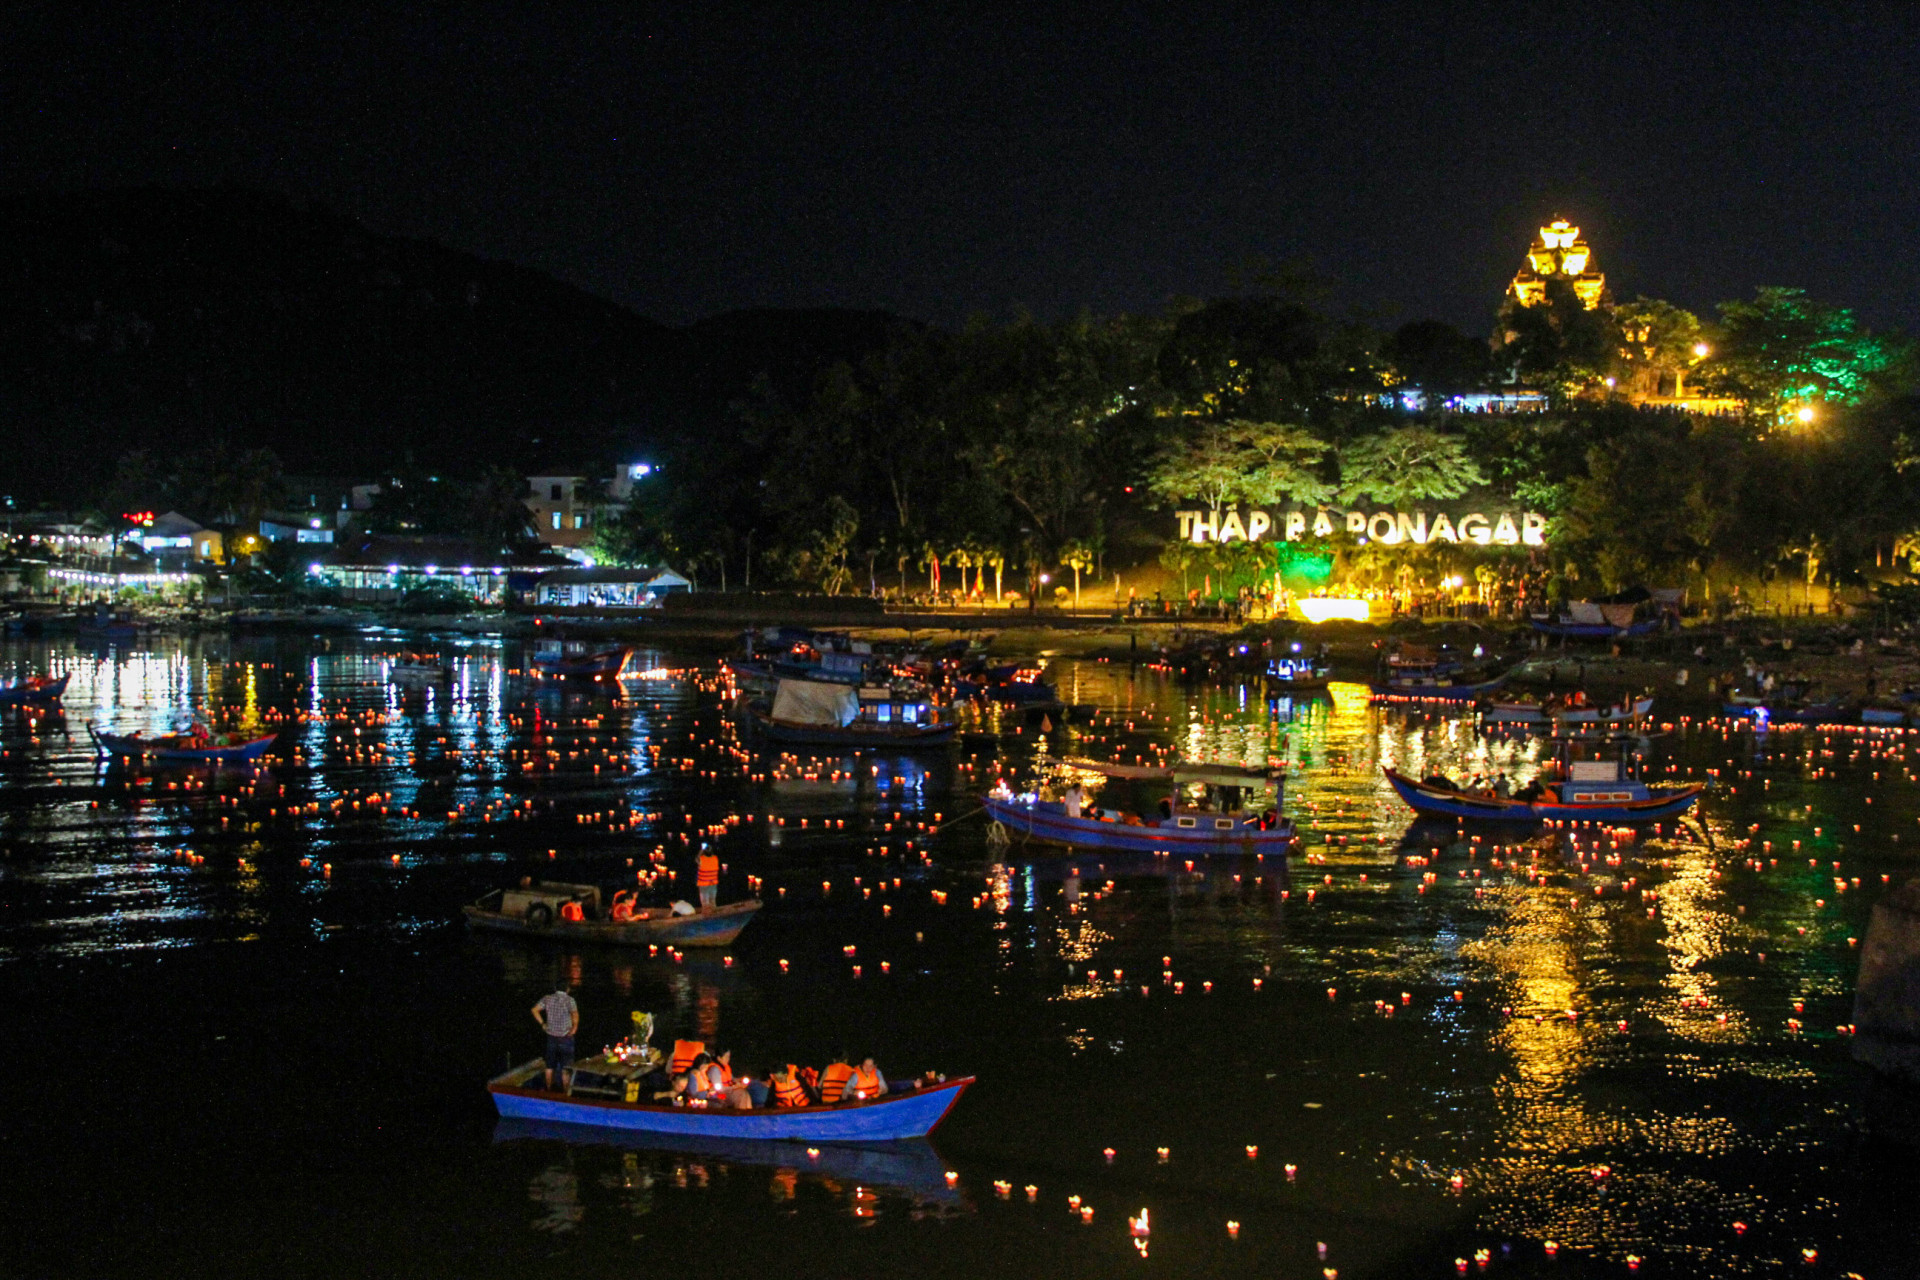 Cảnh thả hoa đăng trên sông Cái trong lễ hội Tháp Bà Ponagar.